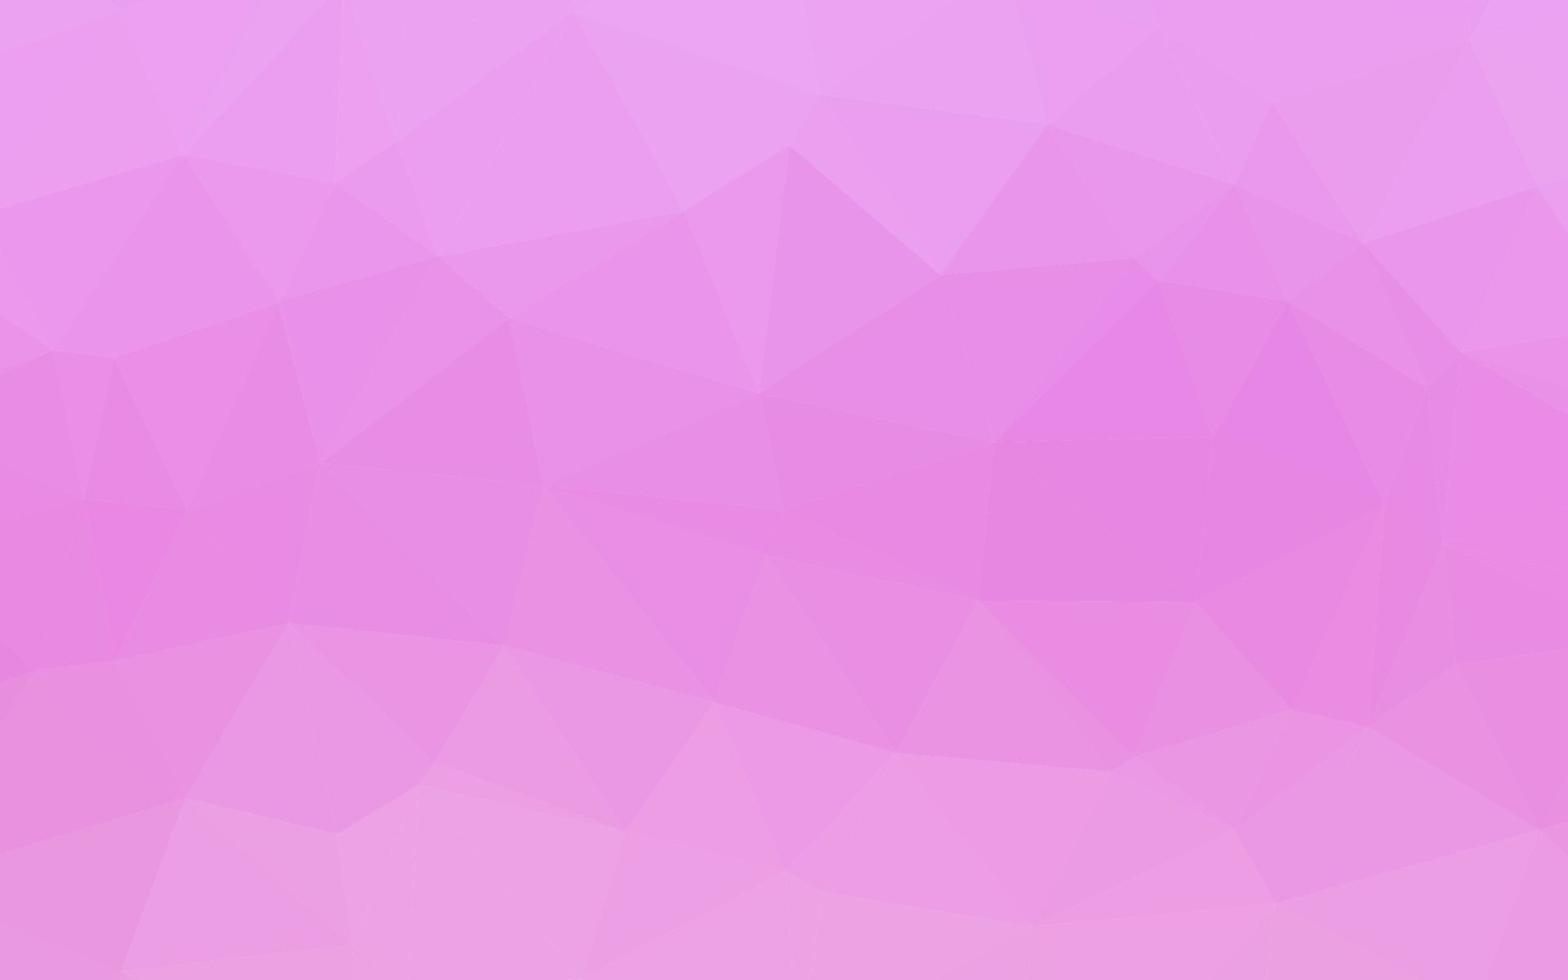 diseño poligonal abstracto vector rosa claro.